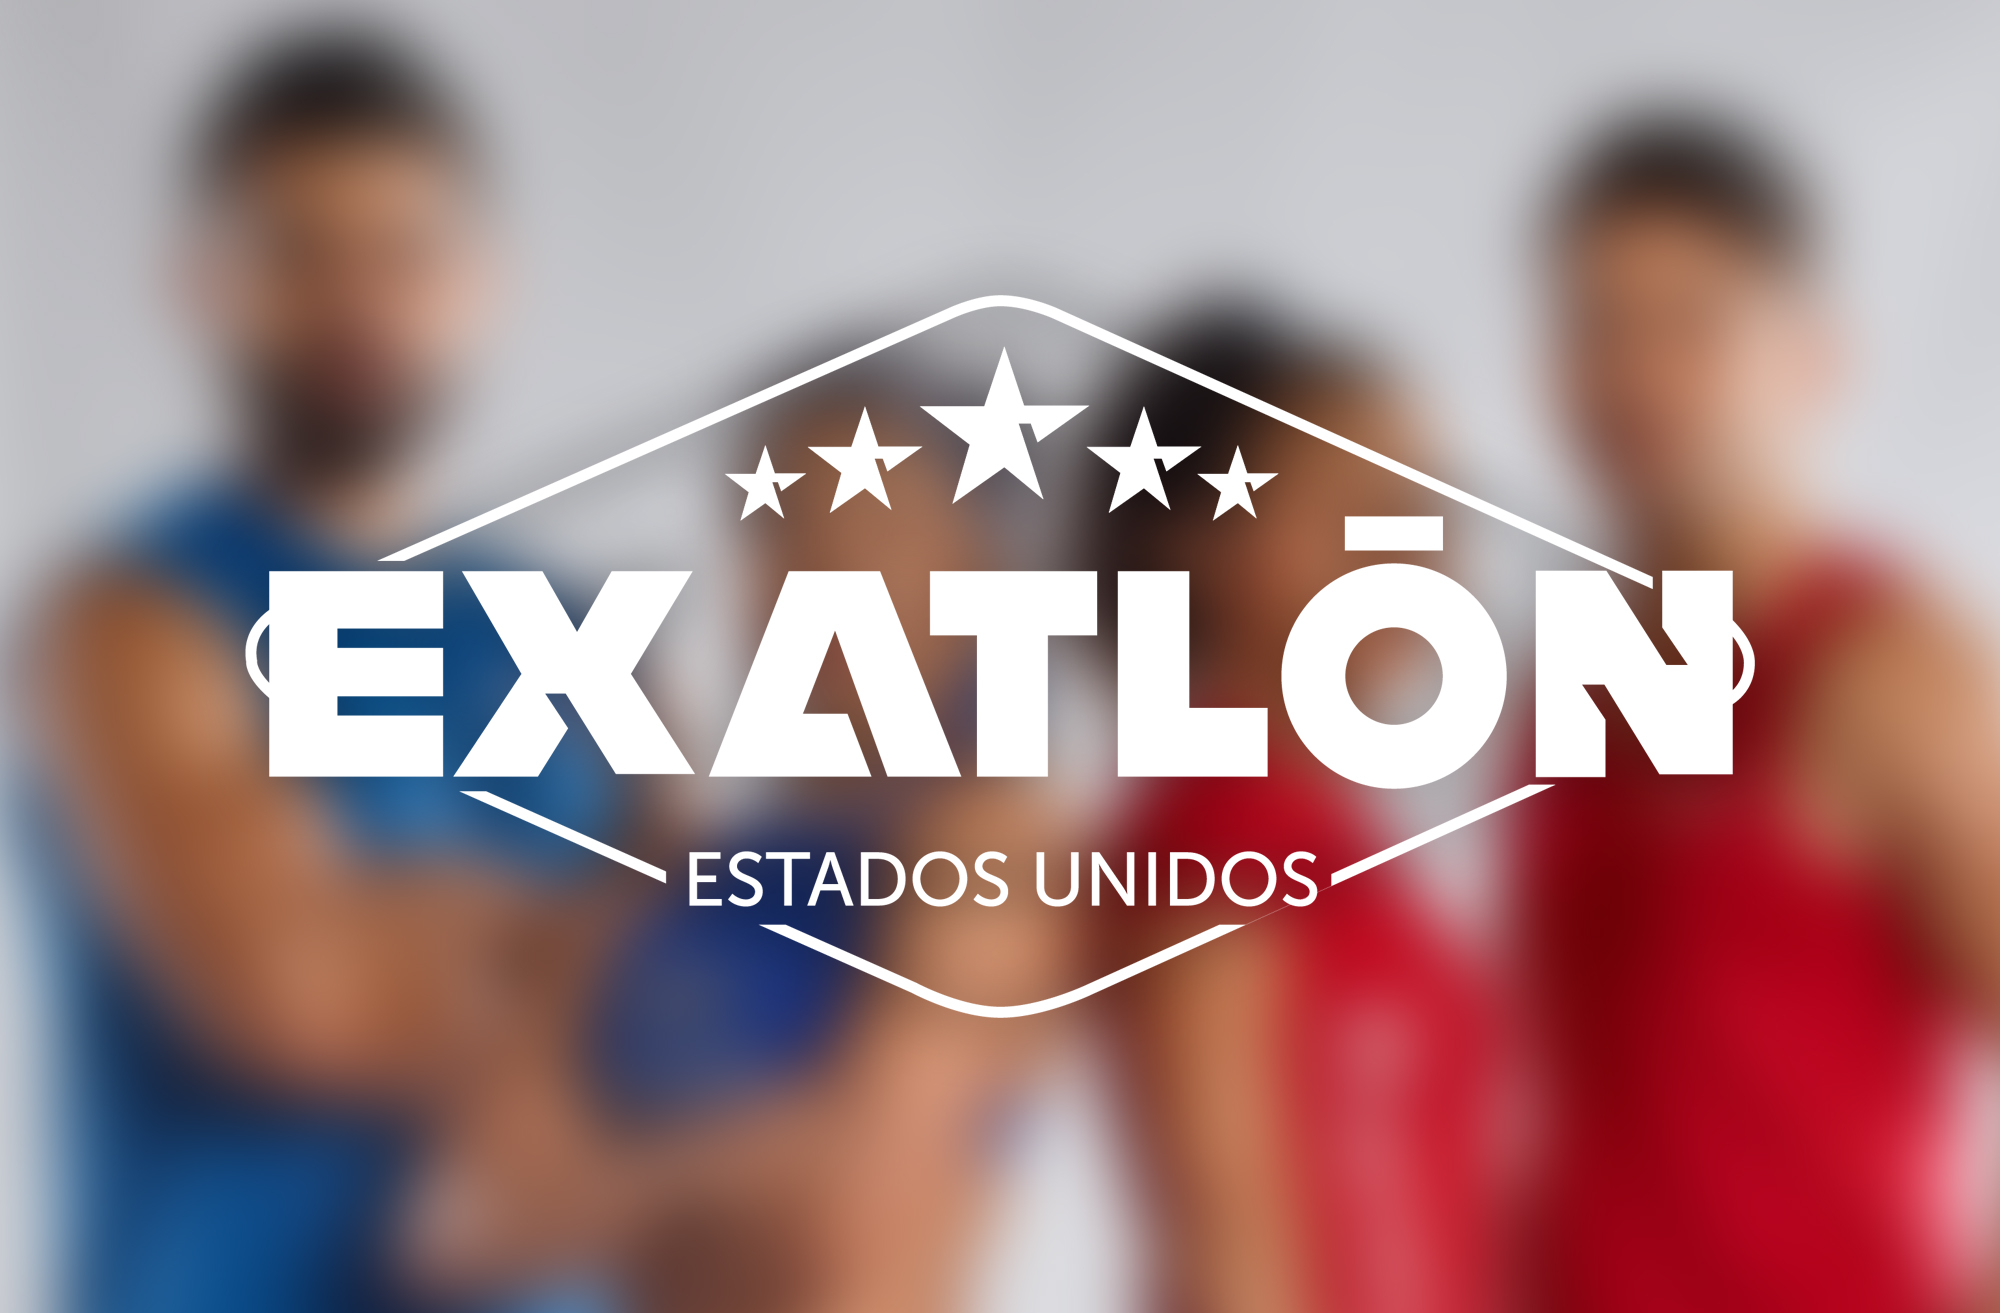 La cuarta temporada de "Exatlón" regresará a 4 participantes legendarios